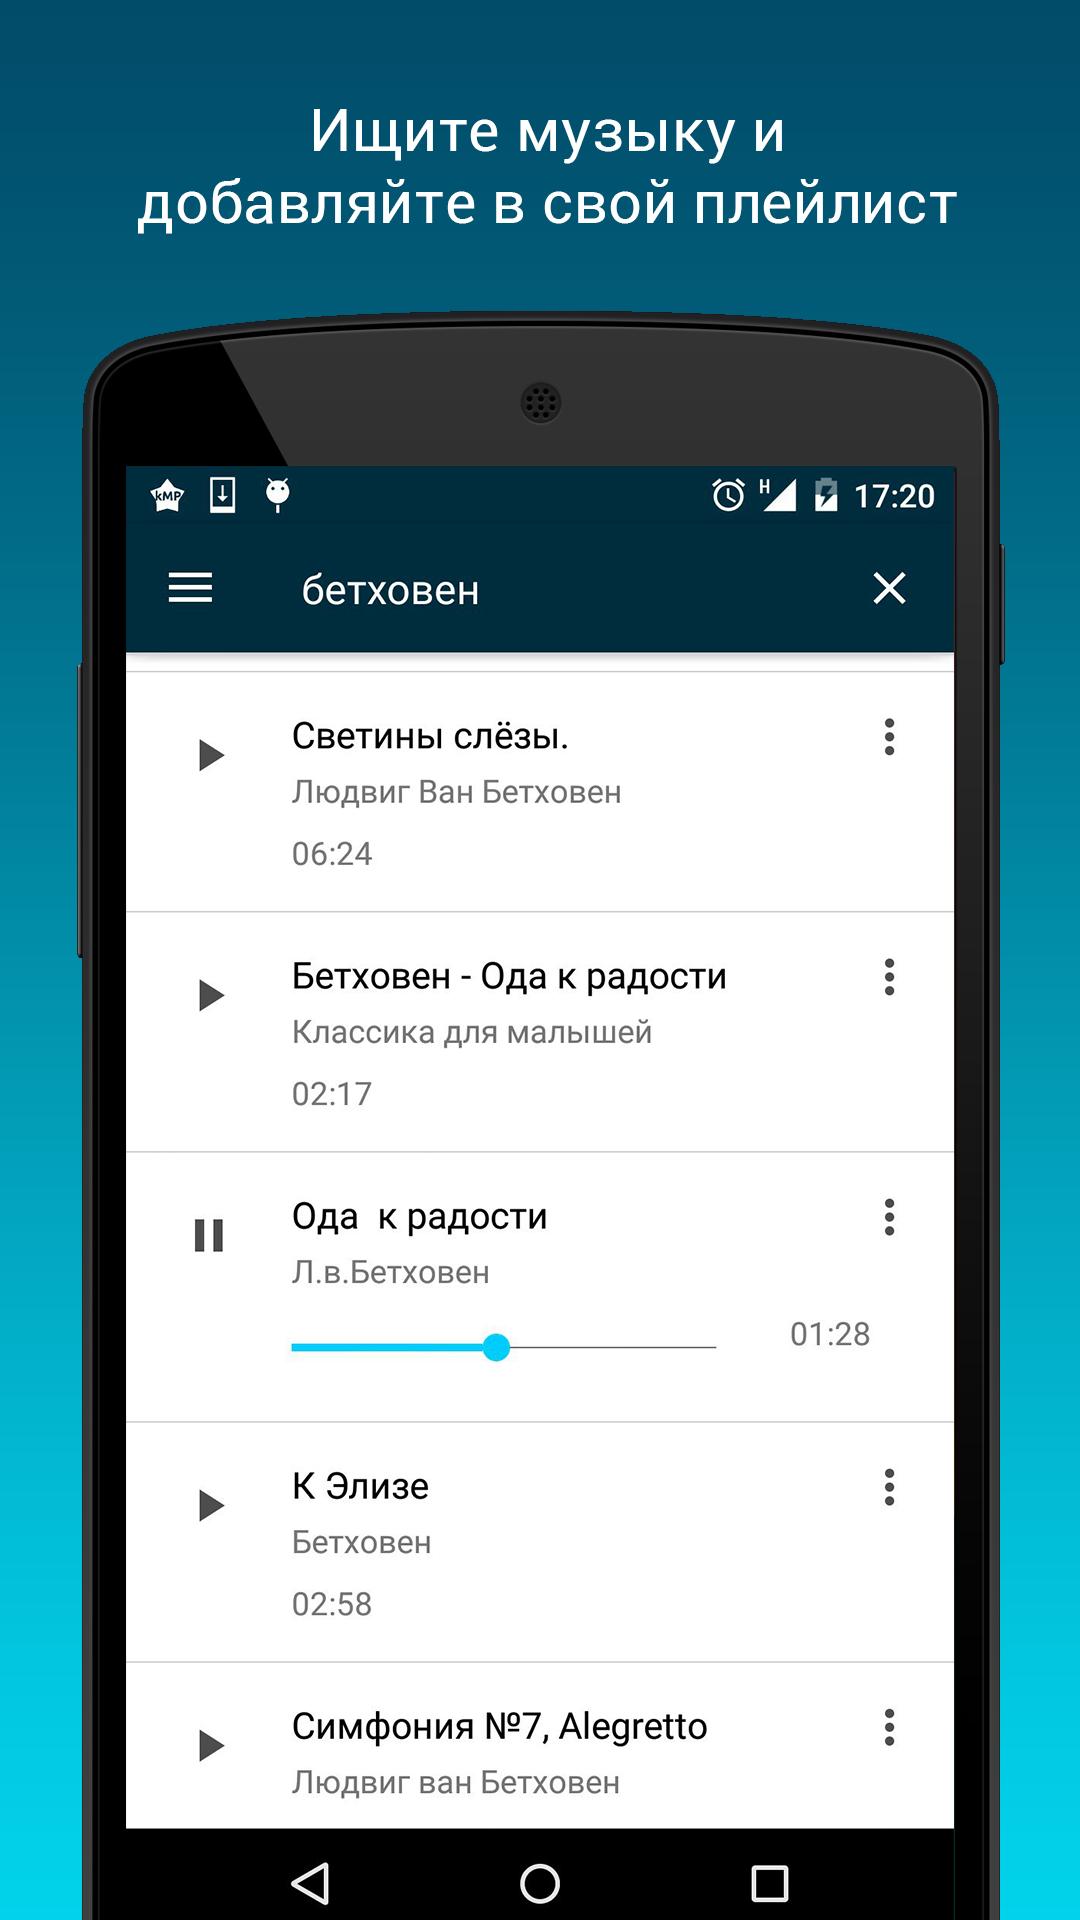 Vk apk андроид. Приложения для своего плейлиста. Приложение чтобы найти музыку. Все версии ВК 4.0. Приложения для музыки на андроид без интернета из ВК.